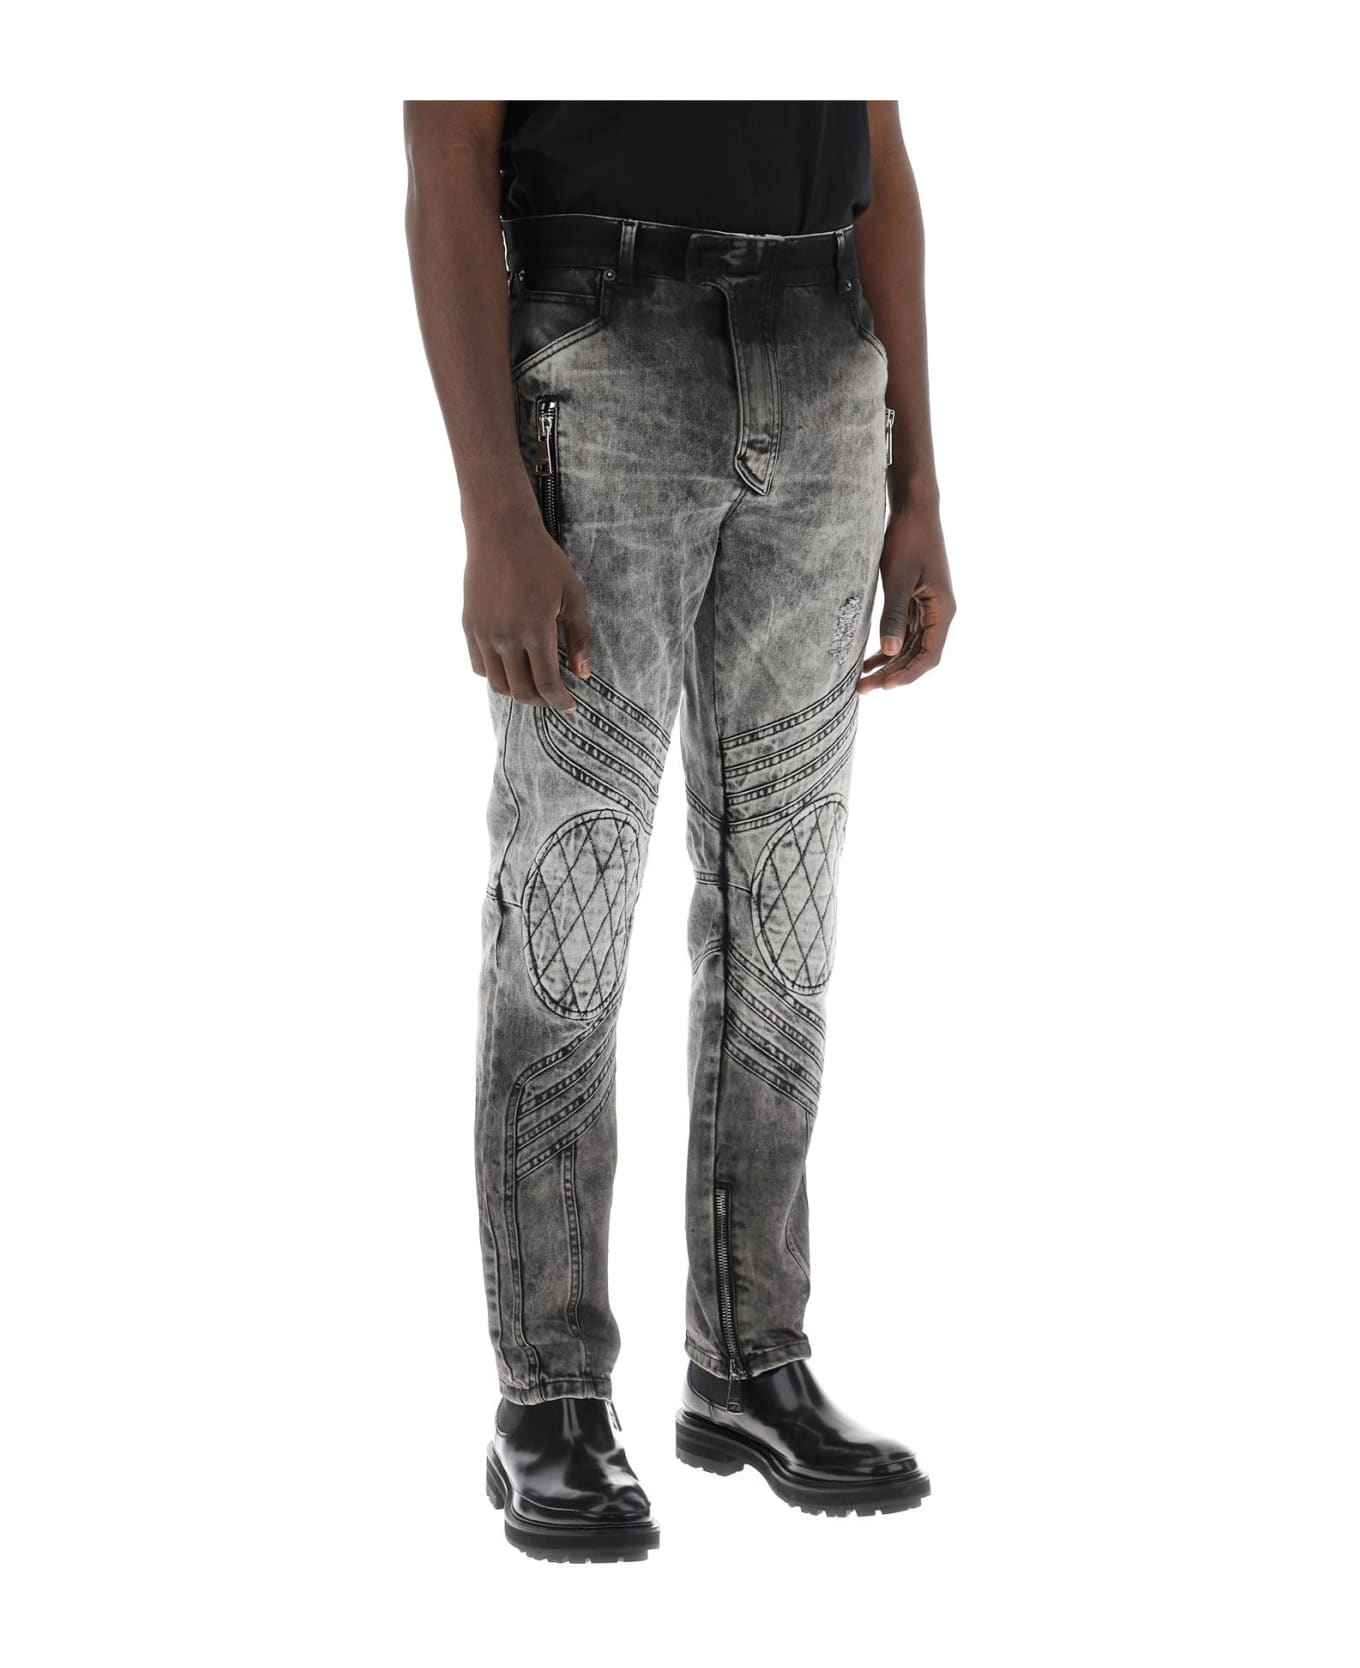 Balmain Motor Slim Fit Jeans - GRIS CLAIR DELAVE (Grey) デニム